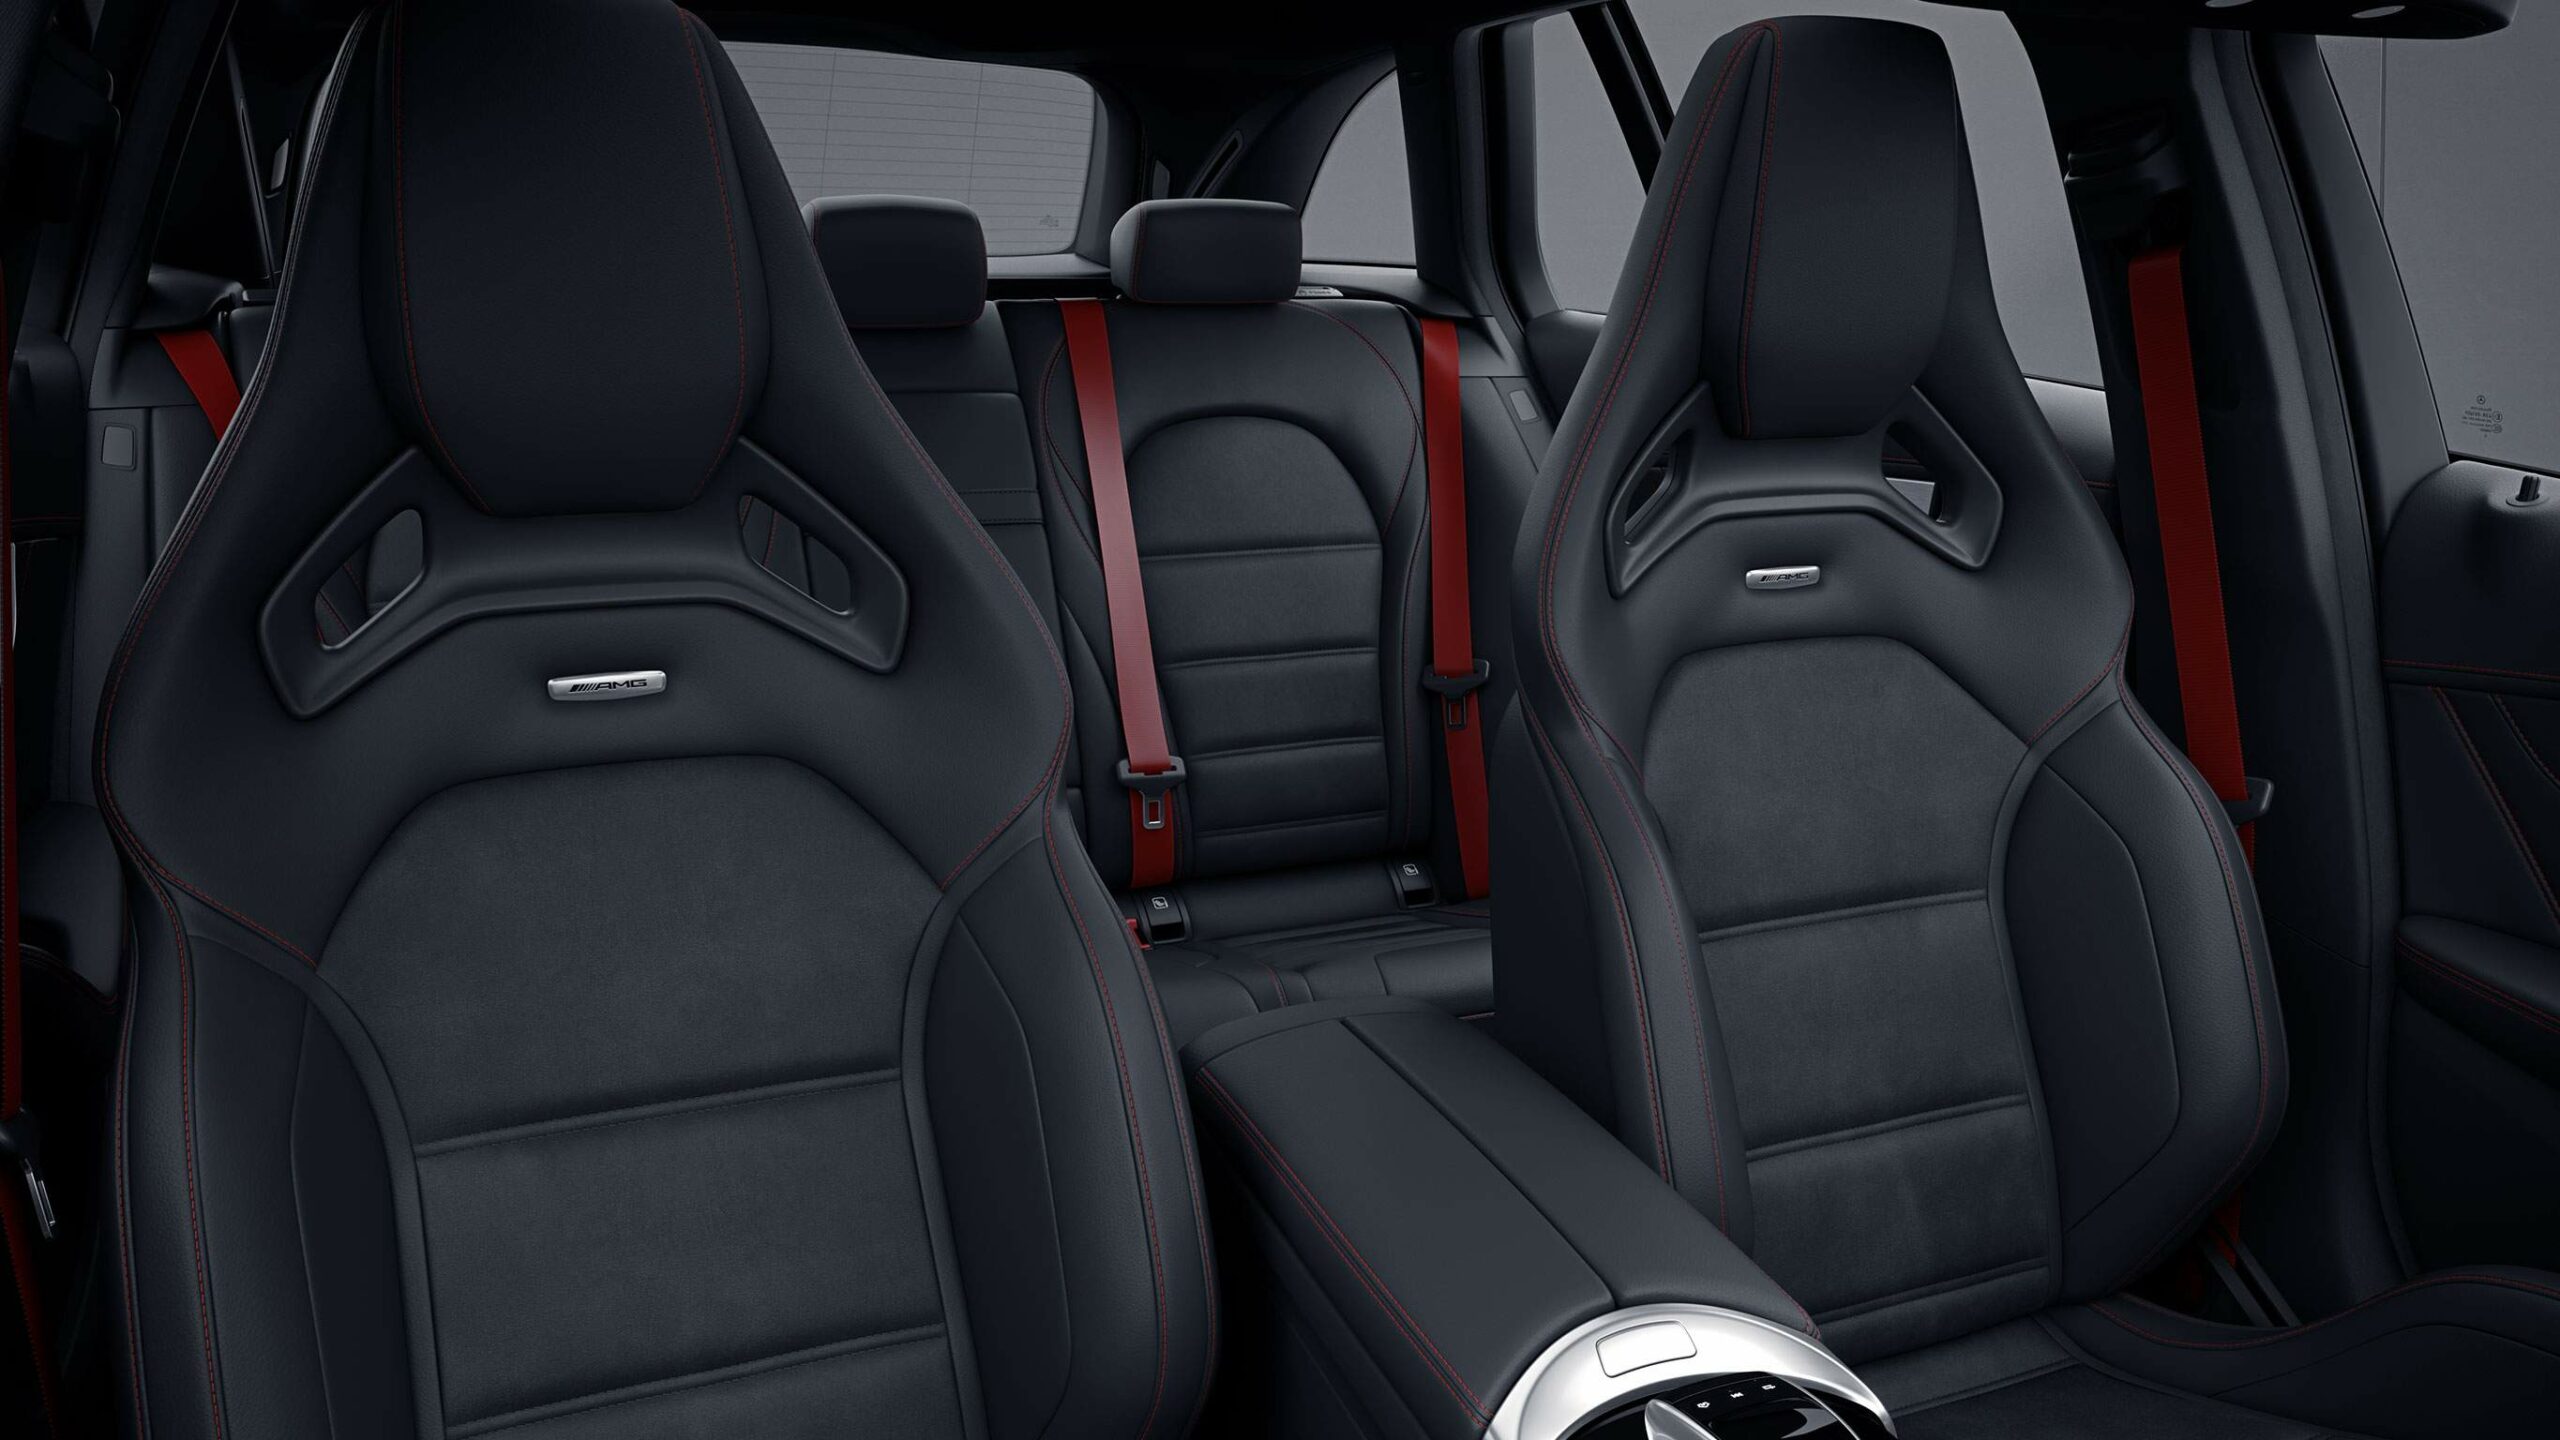 Diseño interior deportivo de la Clase C Coupe AMG, asientos deportivos negros